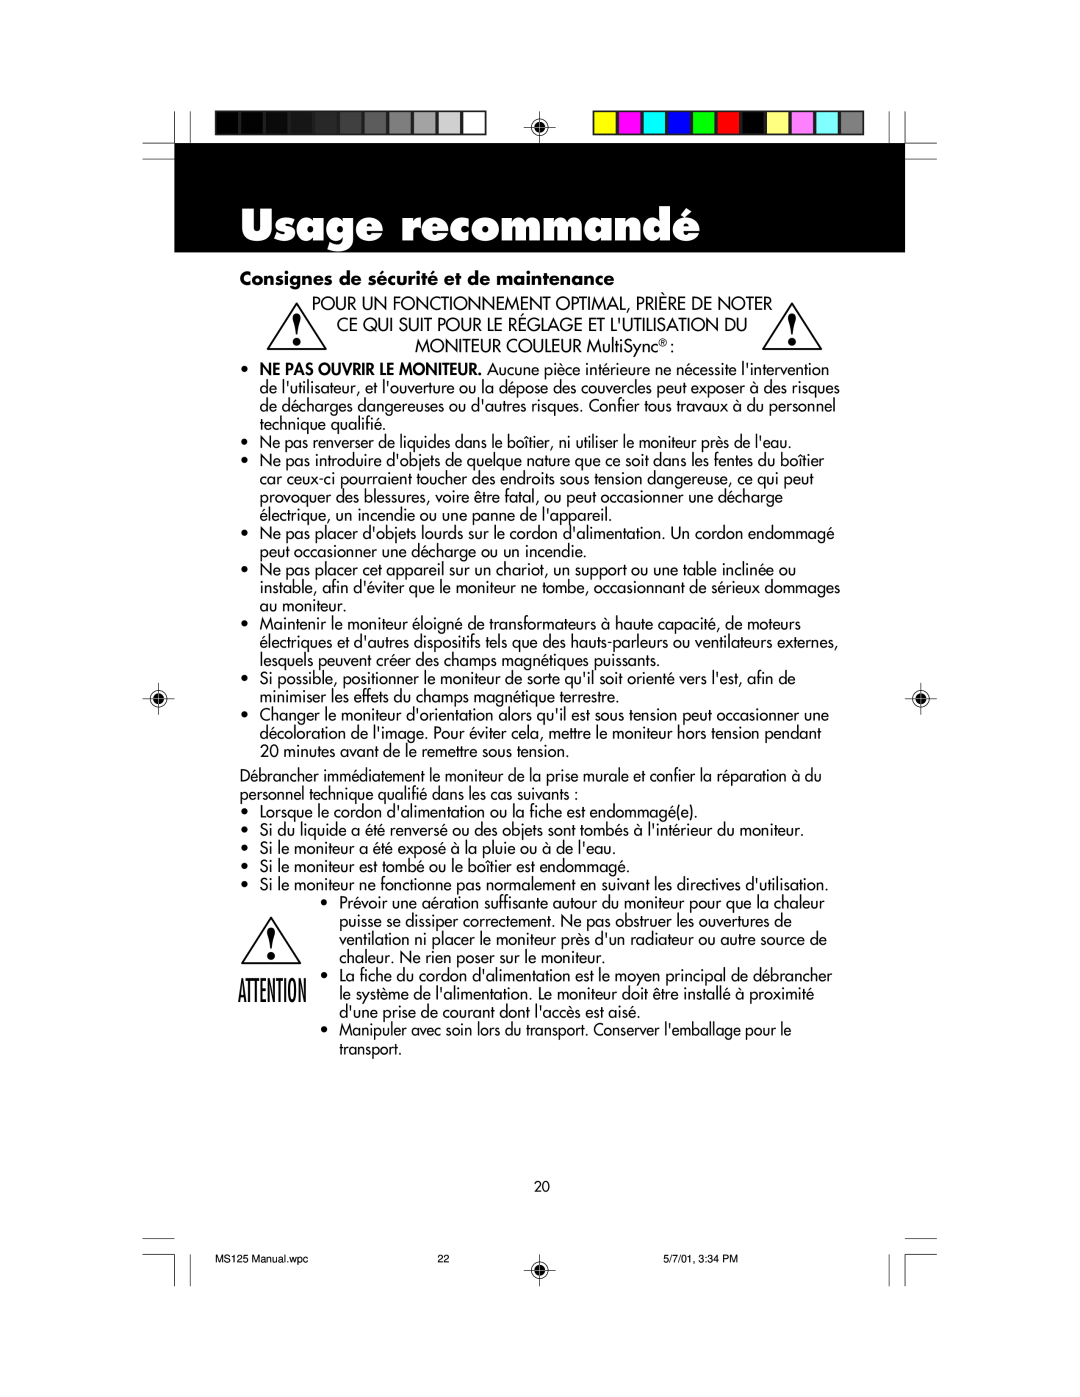 NEC MS125 manual Usage recommandé, Consignes de sécurité et de maintenance 